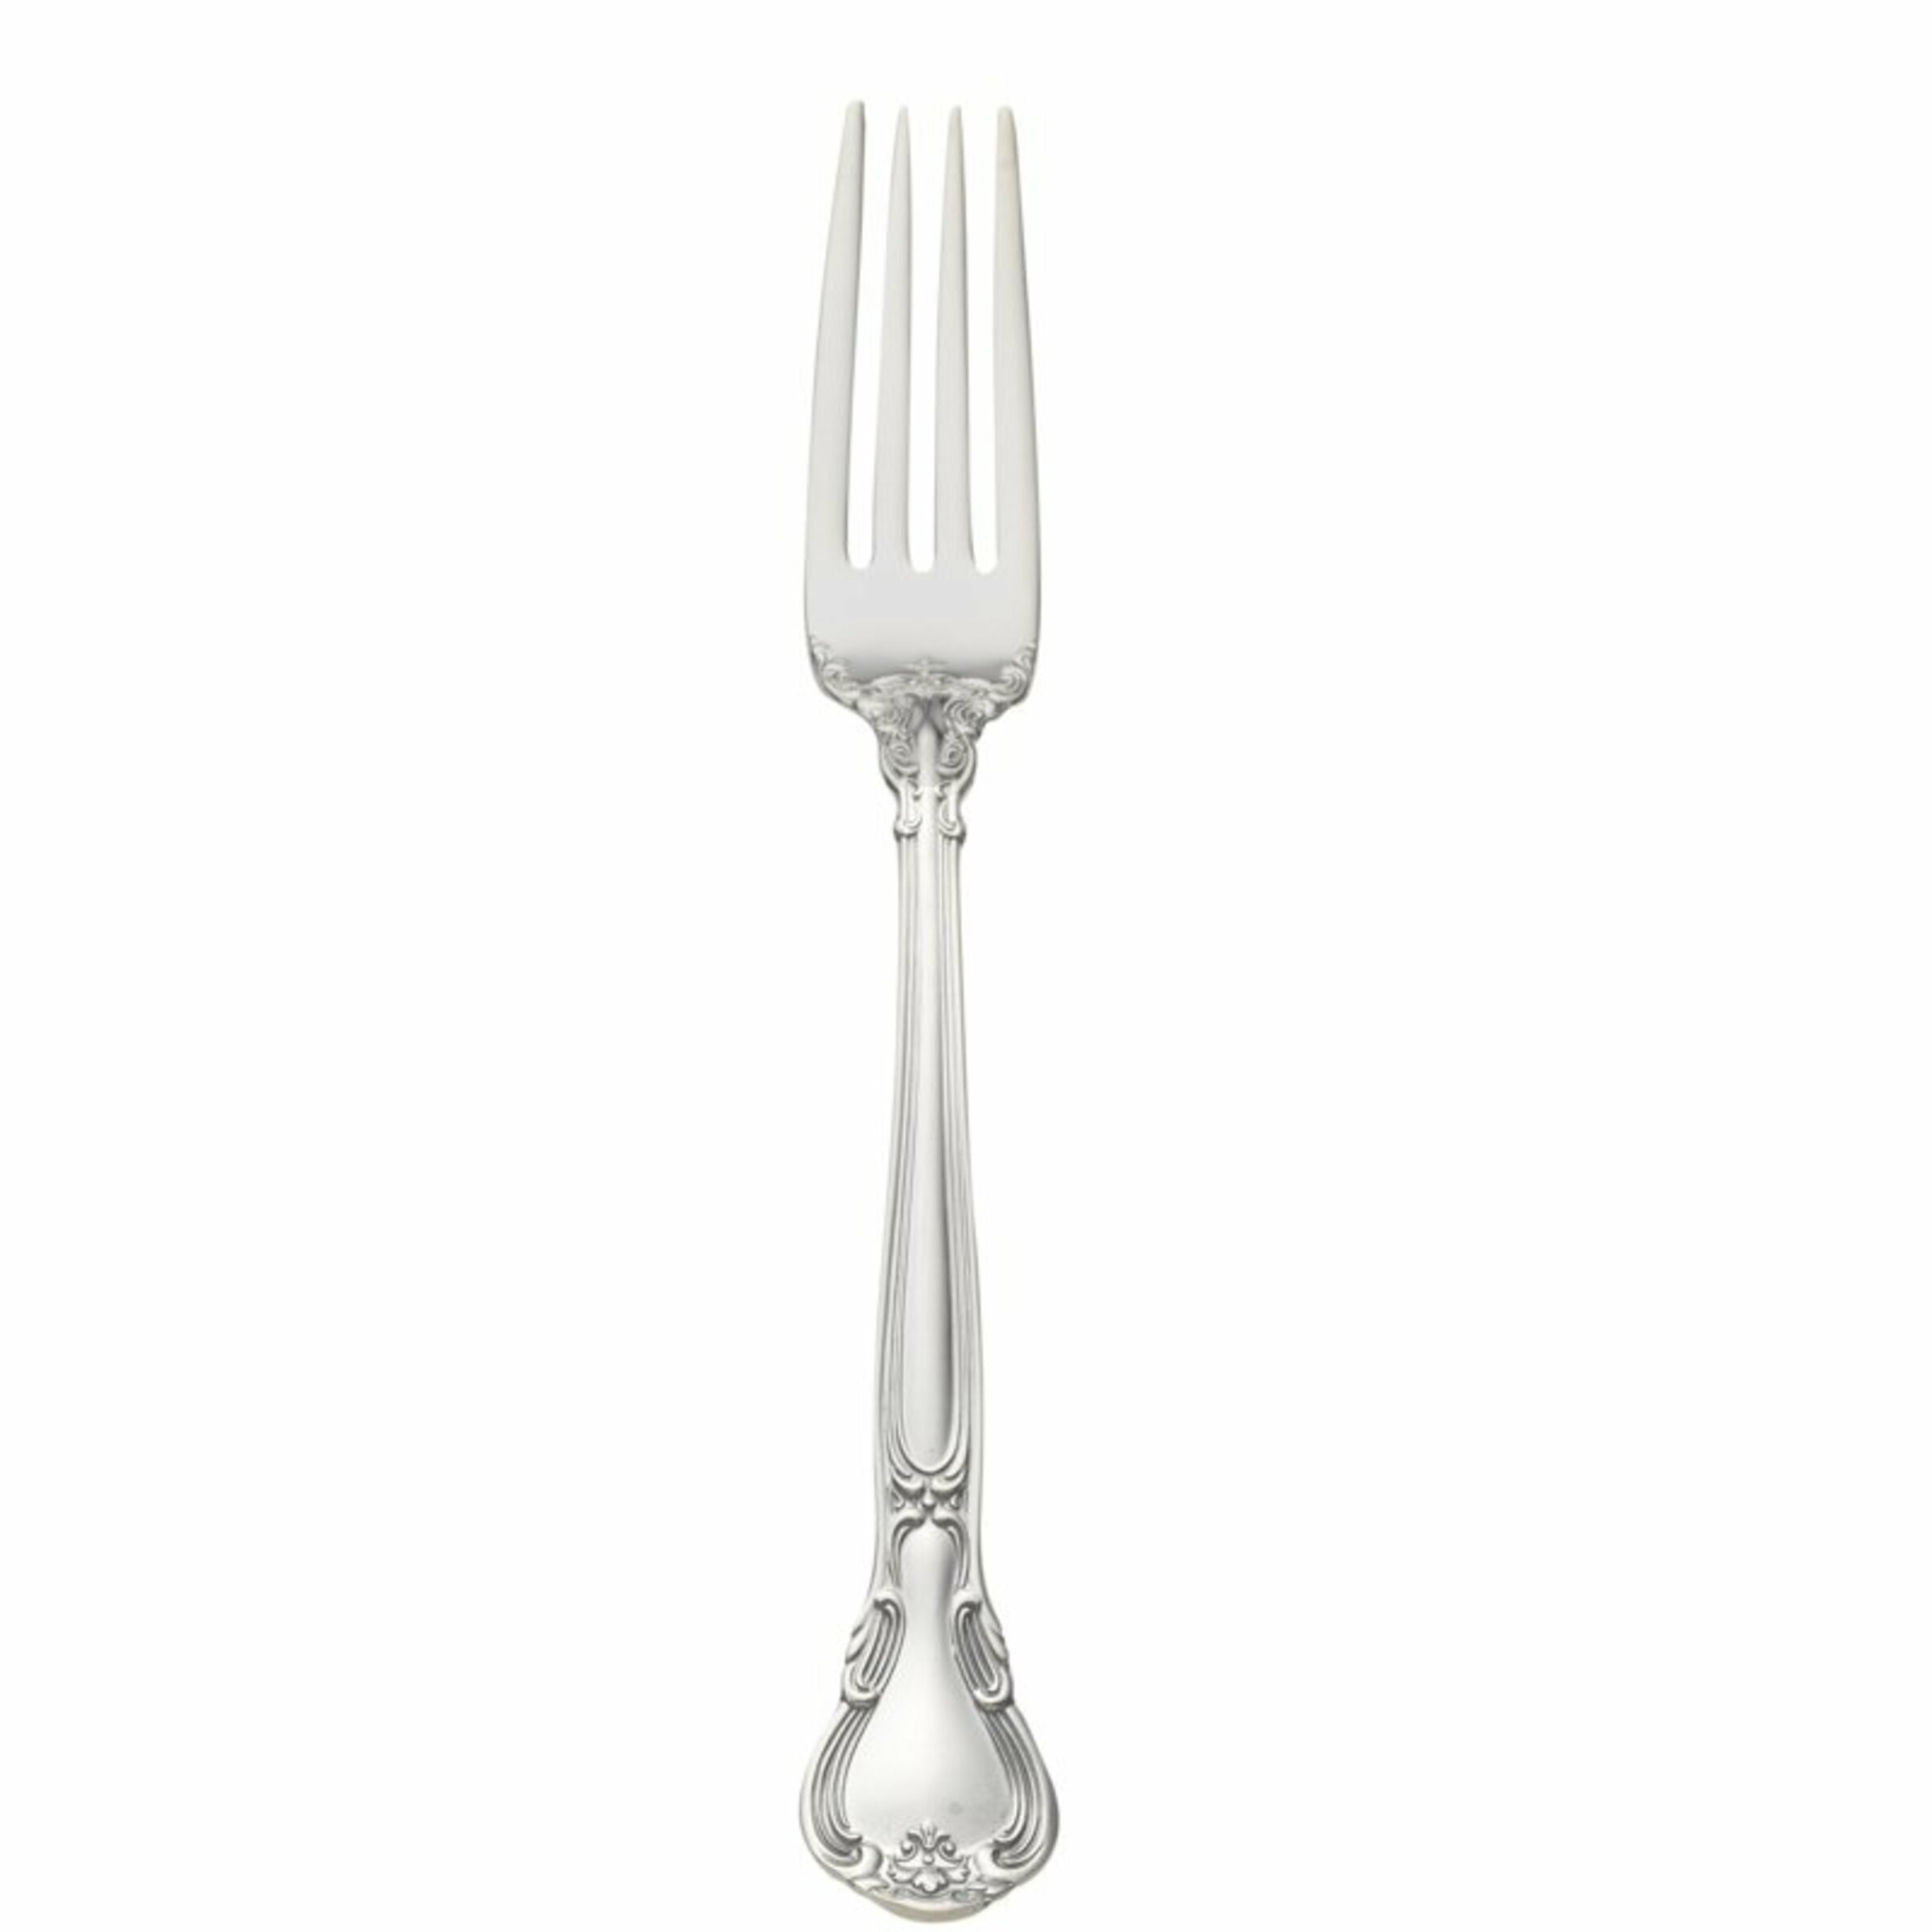 Gorham Chantilly Sterling Silver Luncheon 7" Fork Flatware Silverware No Mono 